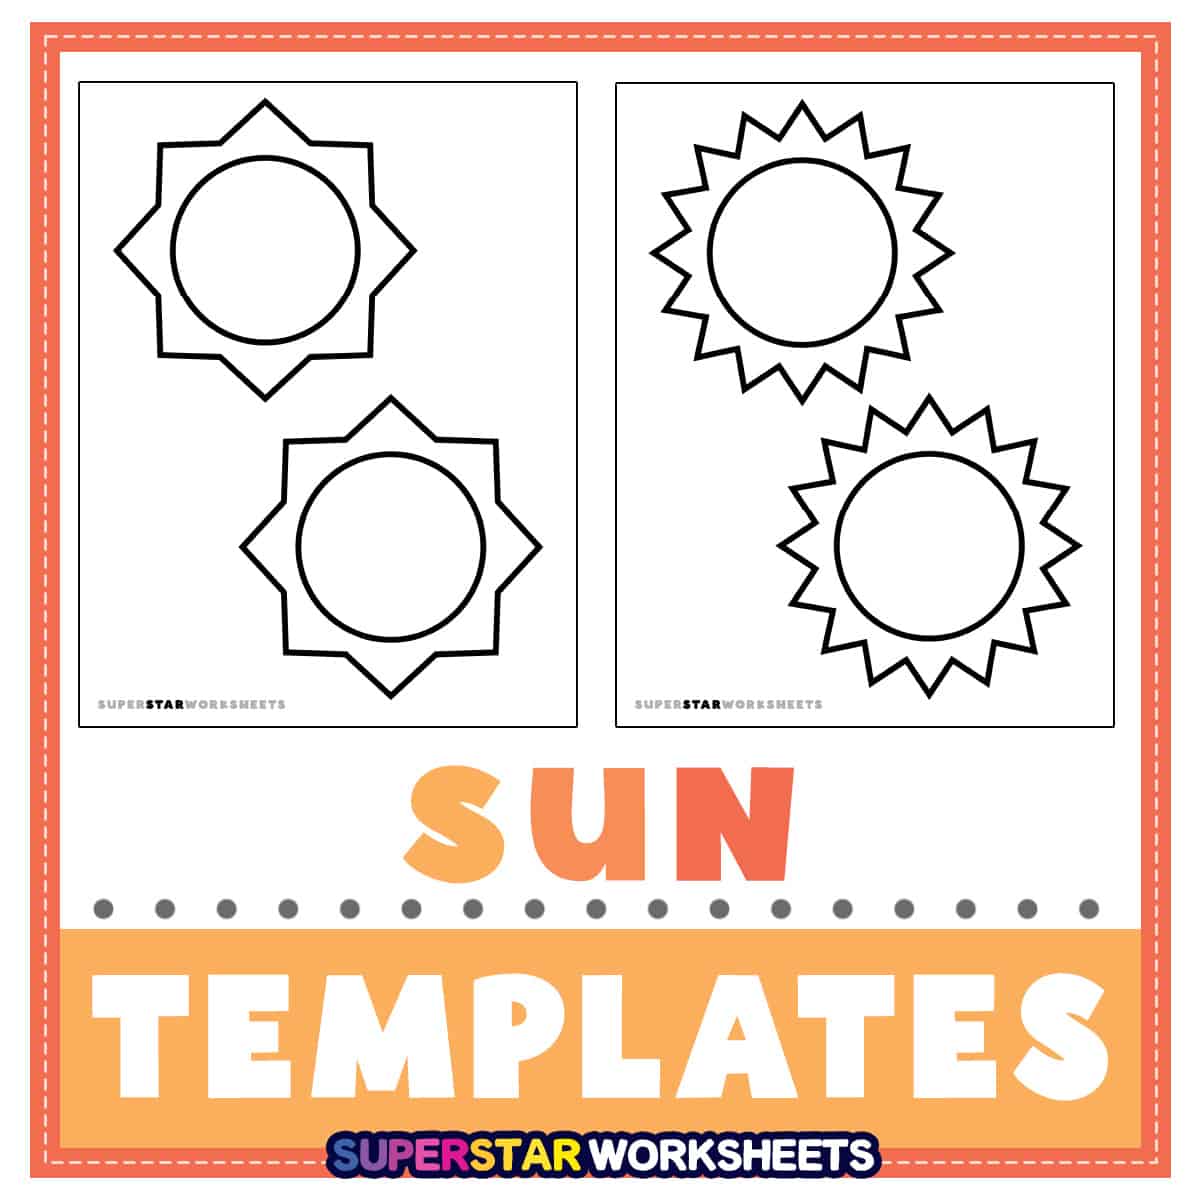 Shape Template - Superstar Worksheets